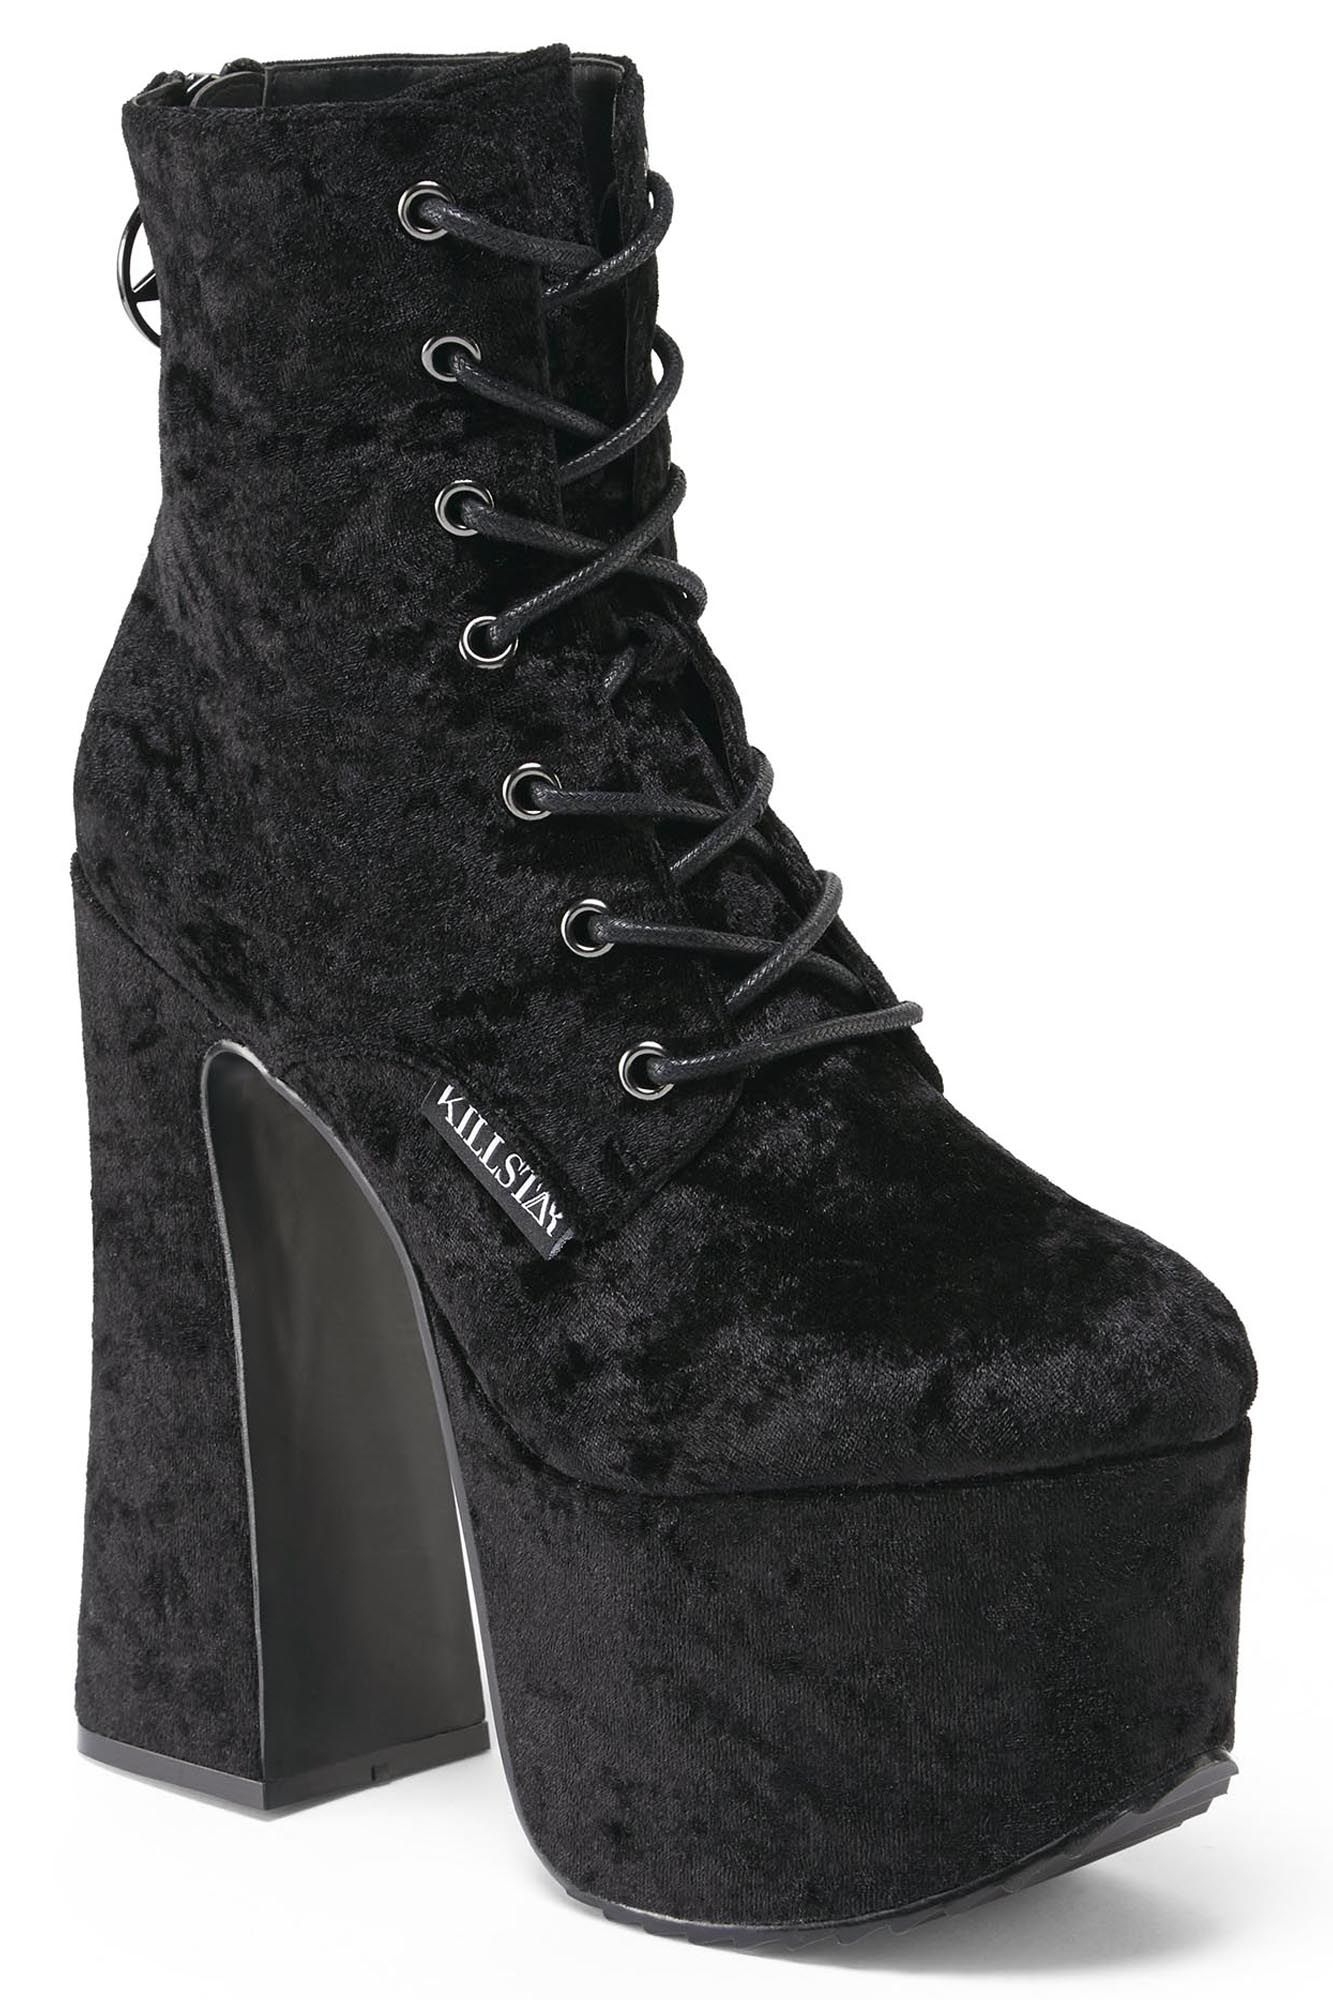 ks2308_chaussures-bottes-plateforme-gothique-glam-rock-hell-o-velvet